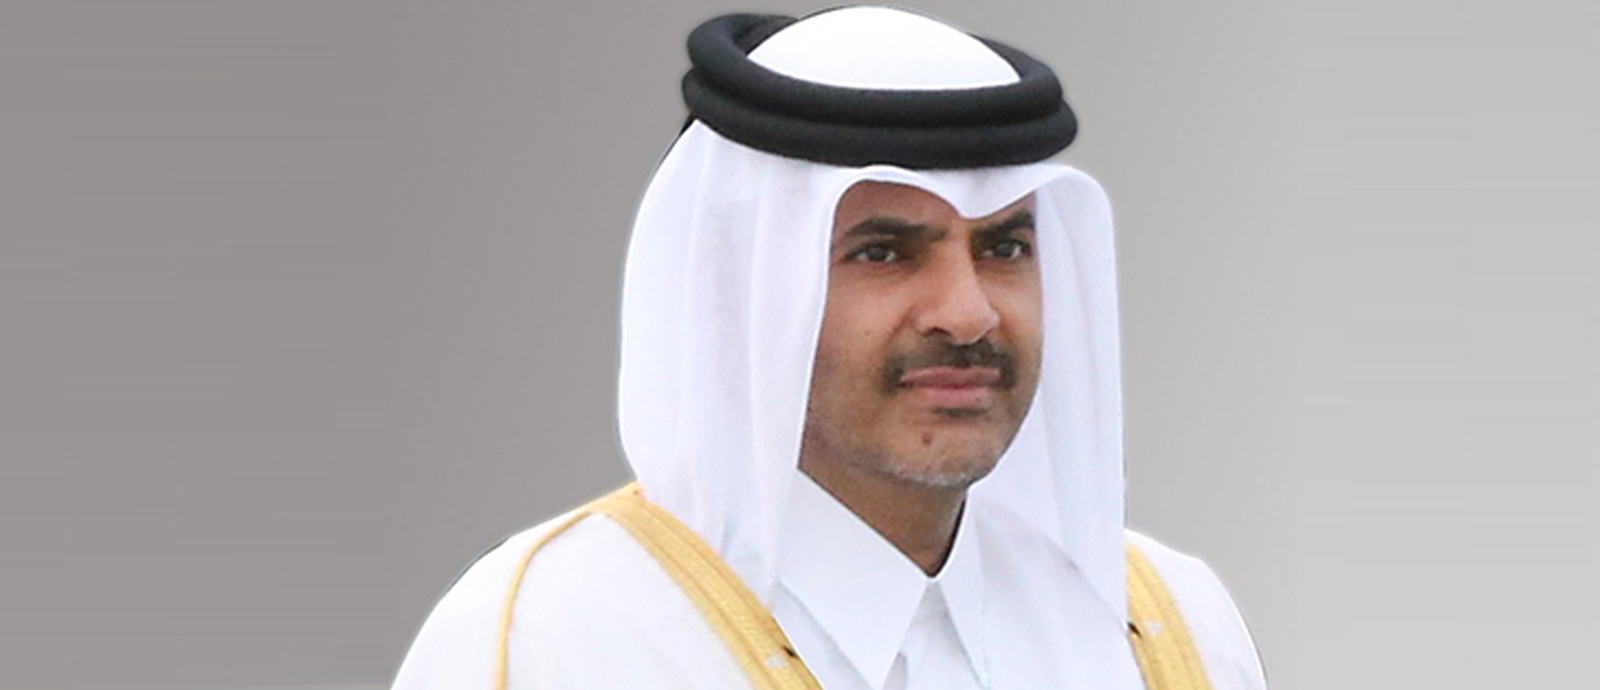 معالي الشيخ خالد بن خليفة بن عبدالعزيز آل ثاني رئيس مجلس الوزراء ووزير الداخلية